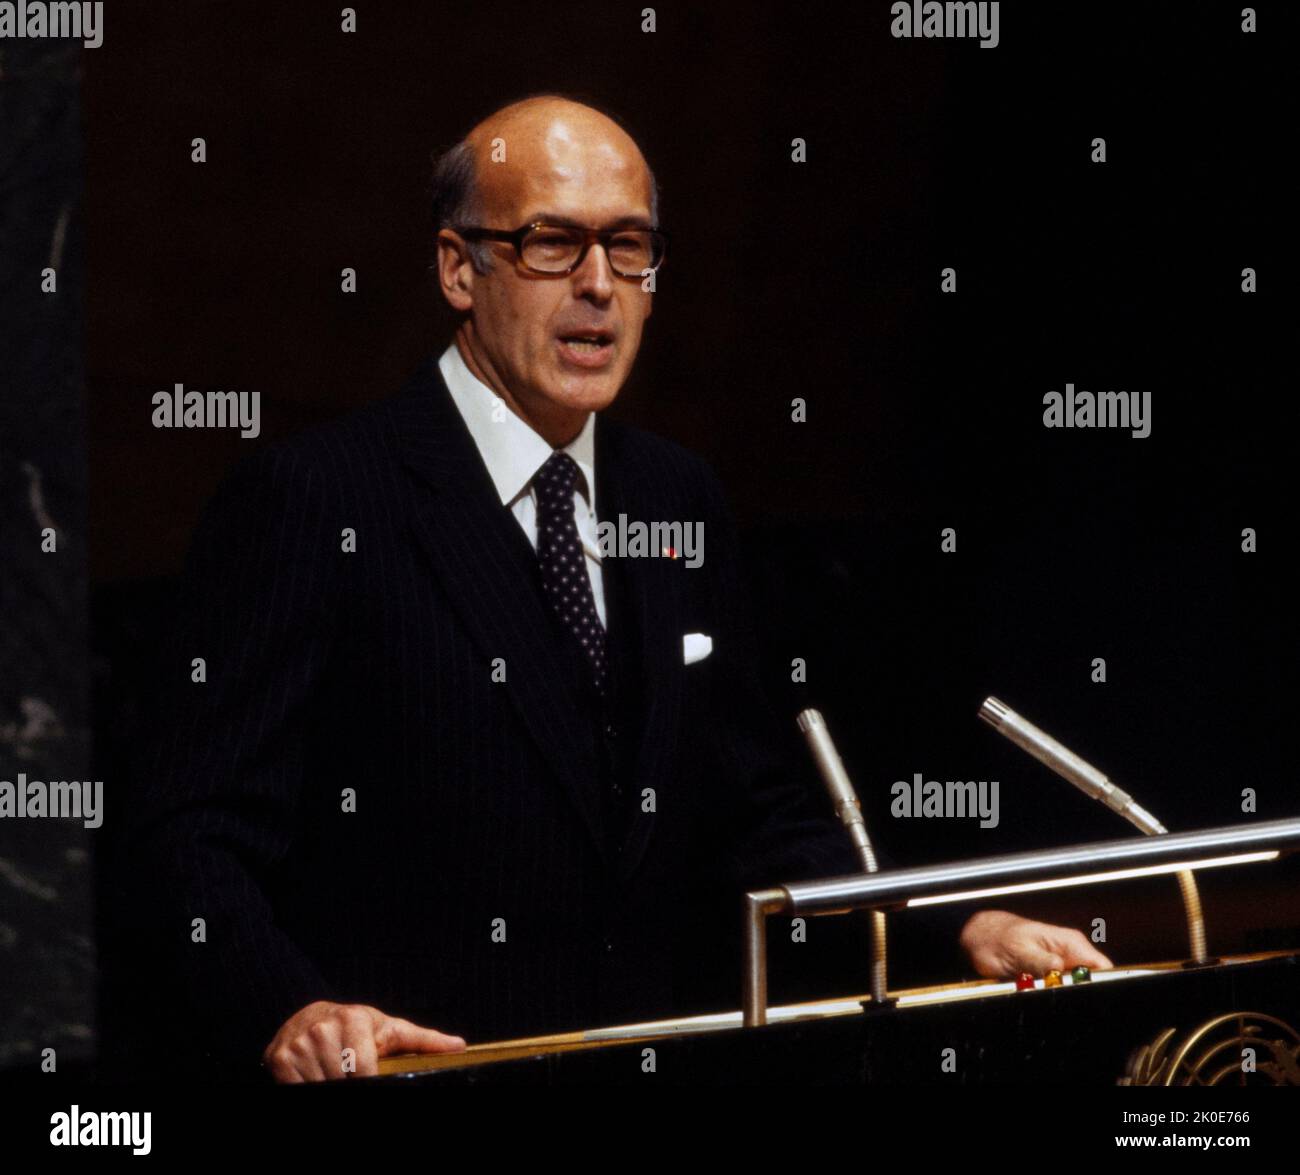 Valery Giscard d'Estaing (1926 - 2020), französischer Politiker, der von 1974 bis 1981 als Präsident Frankreichs fungierte, sprach 1978 vor den Vereinten Nationen. Stockfoto